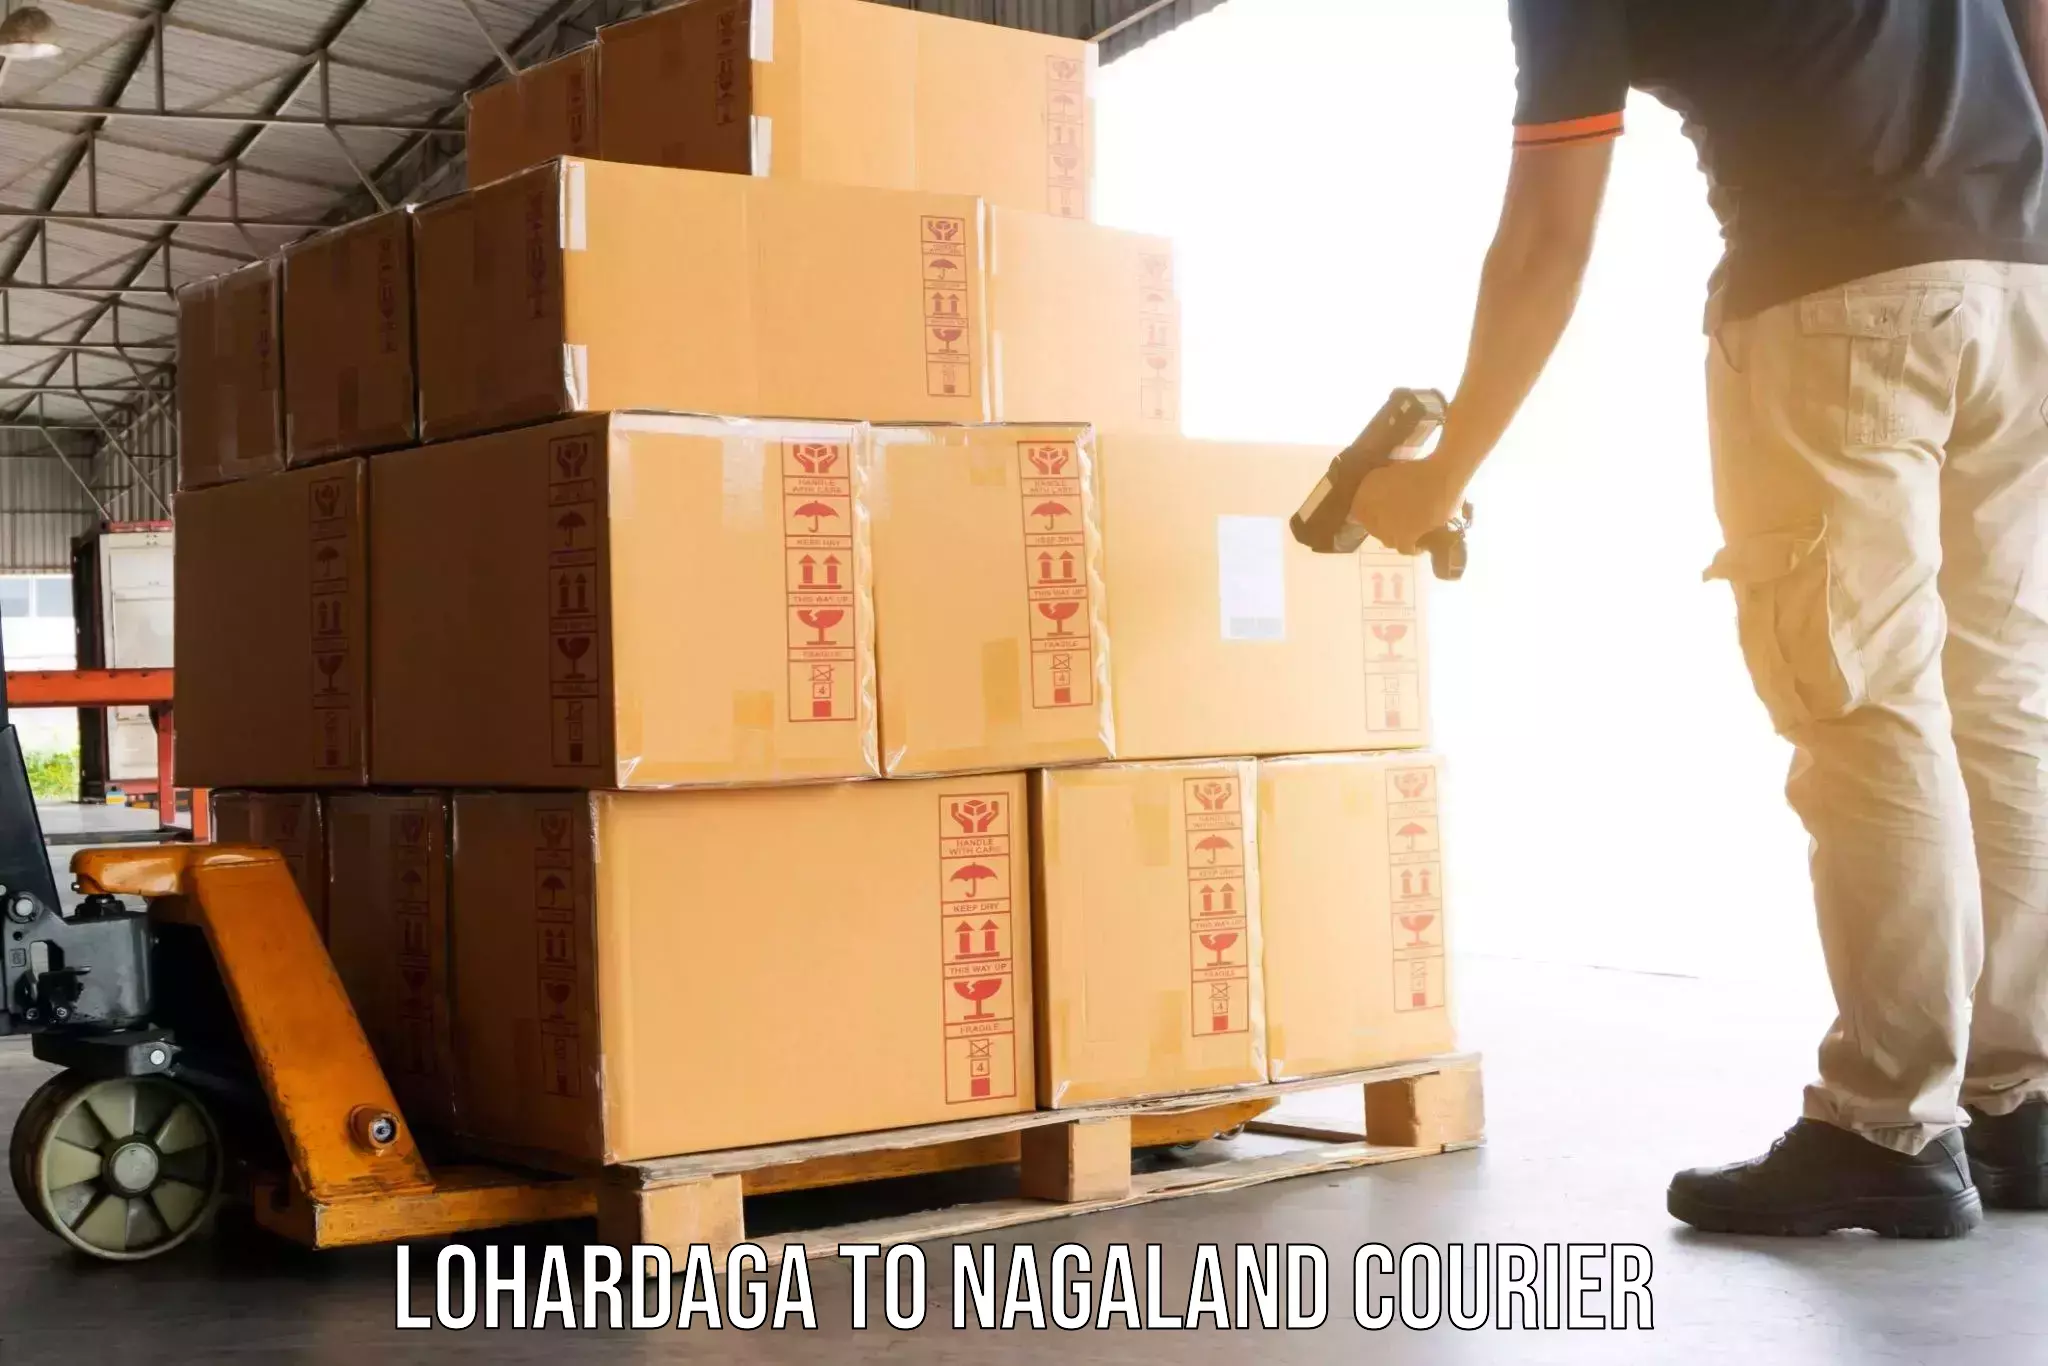 Professional packing services Lohardaga to Nagaland